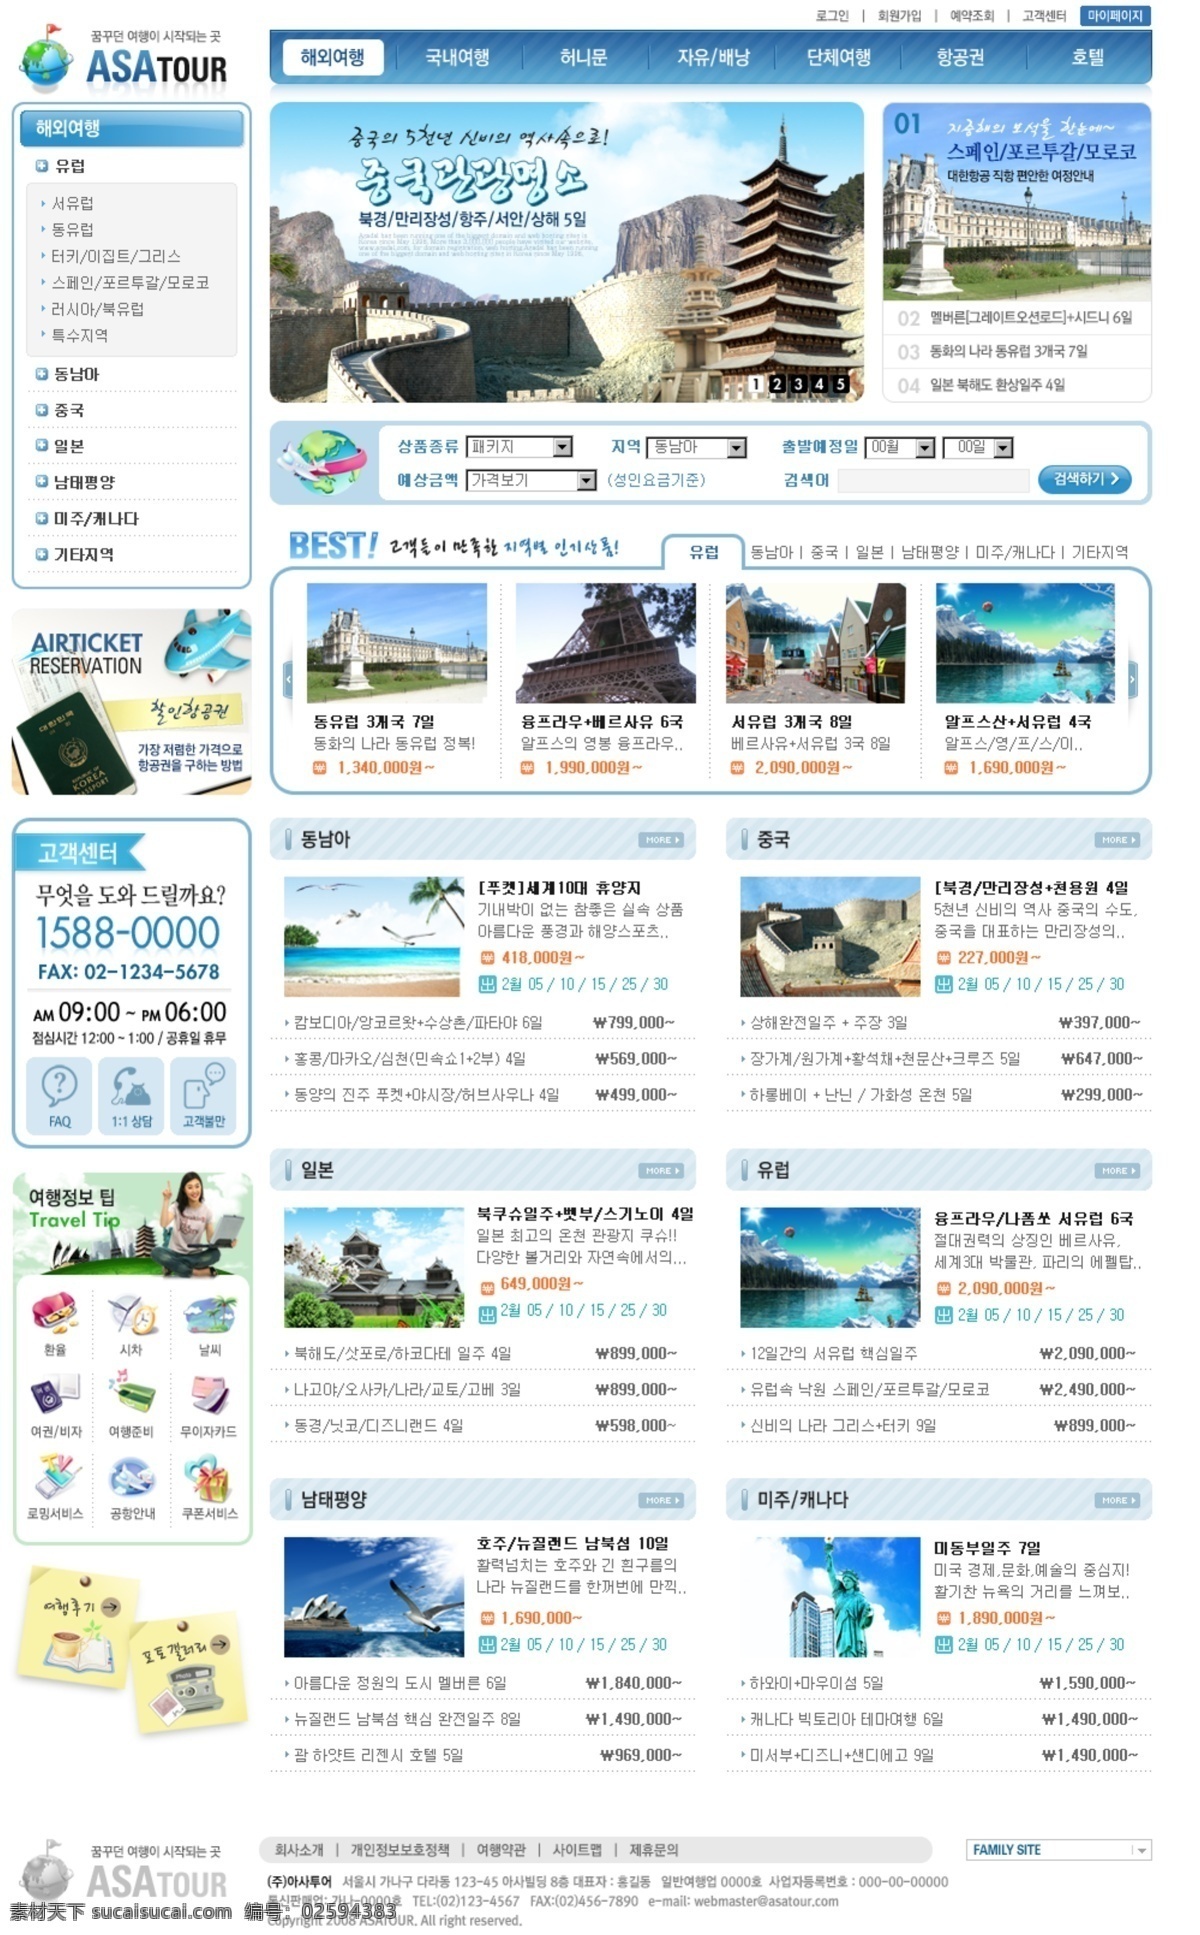 韩国旅游 大型 网站 网页模板 糜未笮屯就衬 网页素材